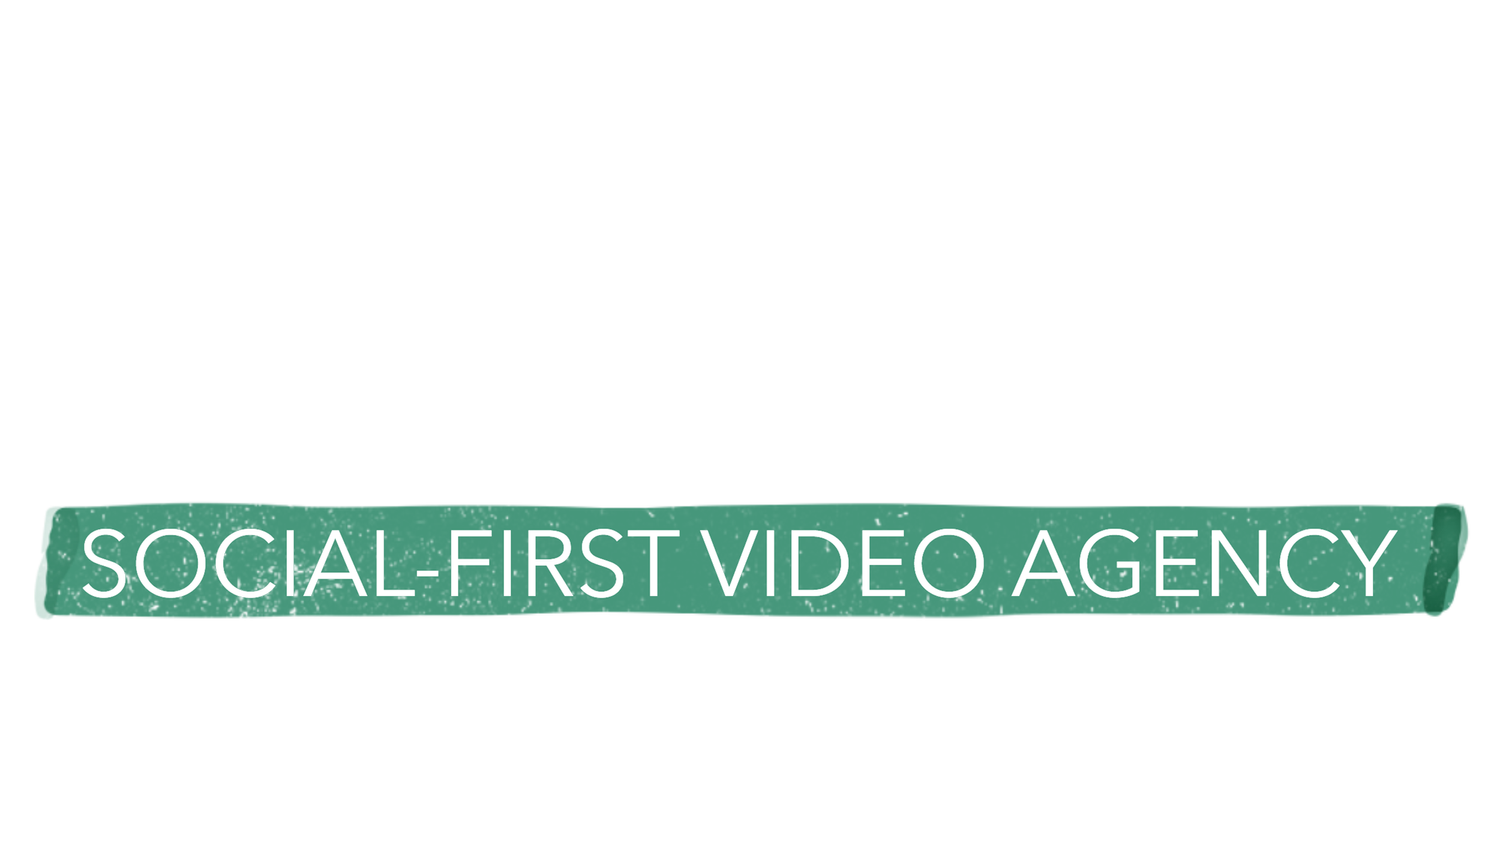 Justfilms